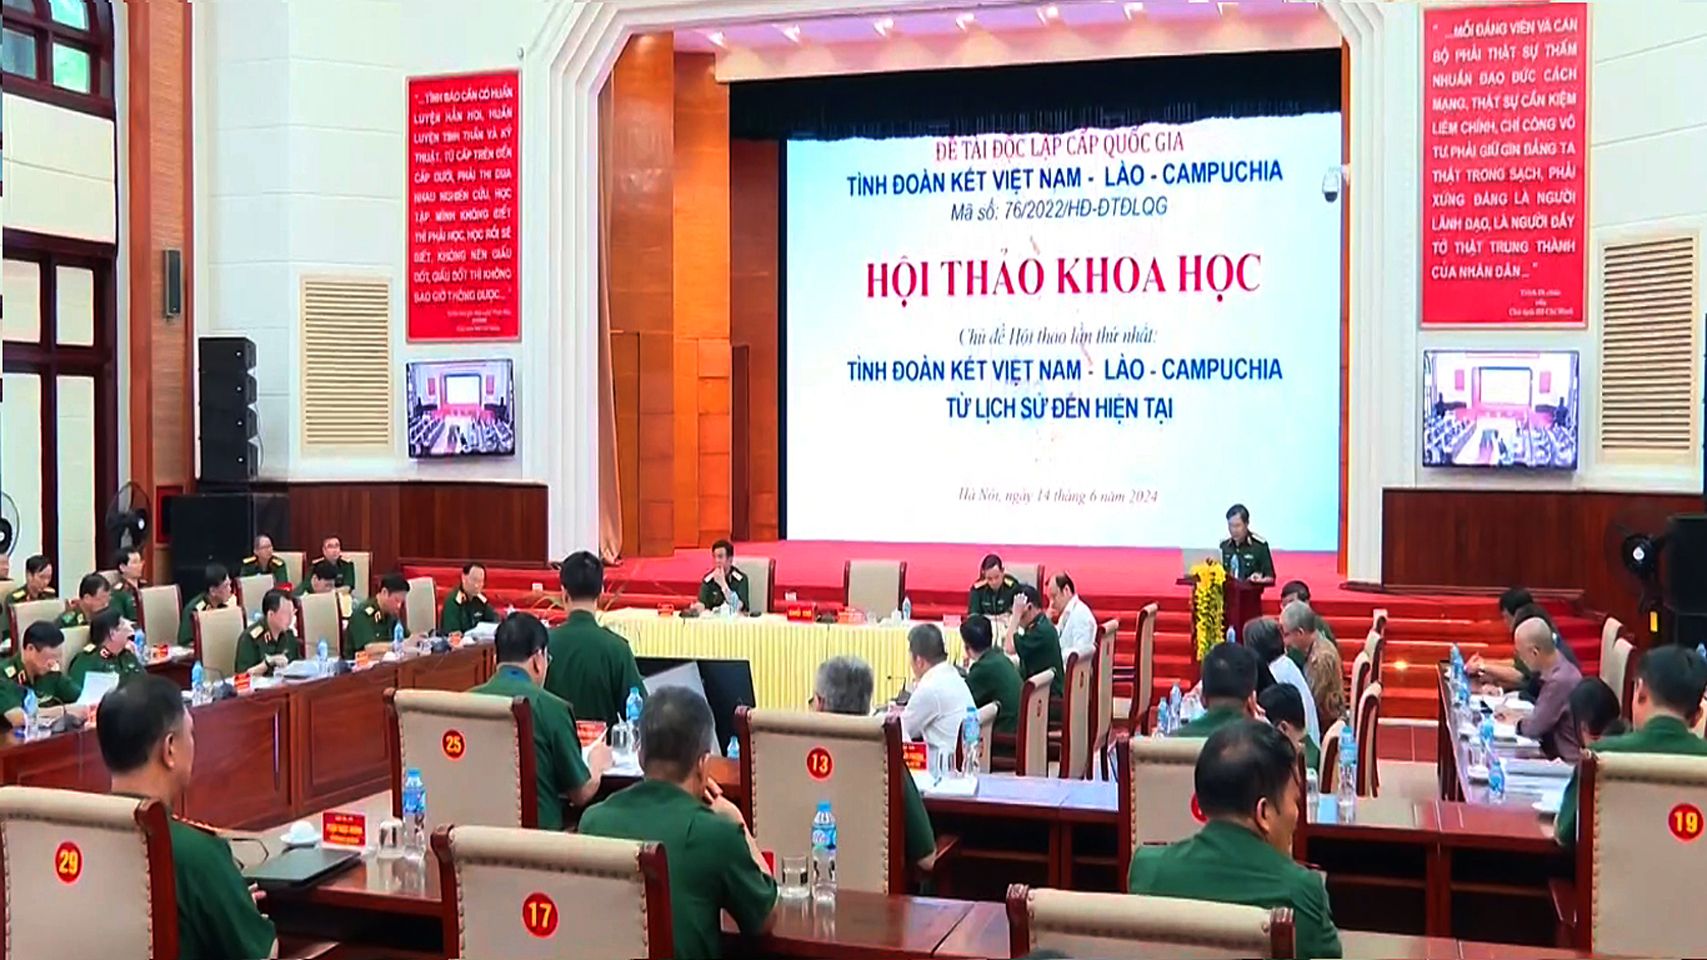 Tình đoàn kết Việt Nam - Lào - Campuchia từ lịch sử đến hiện tại